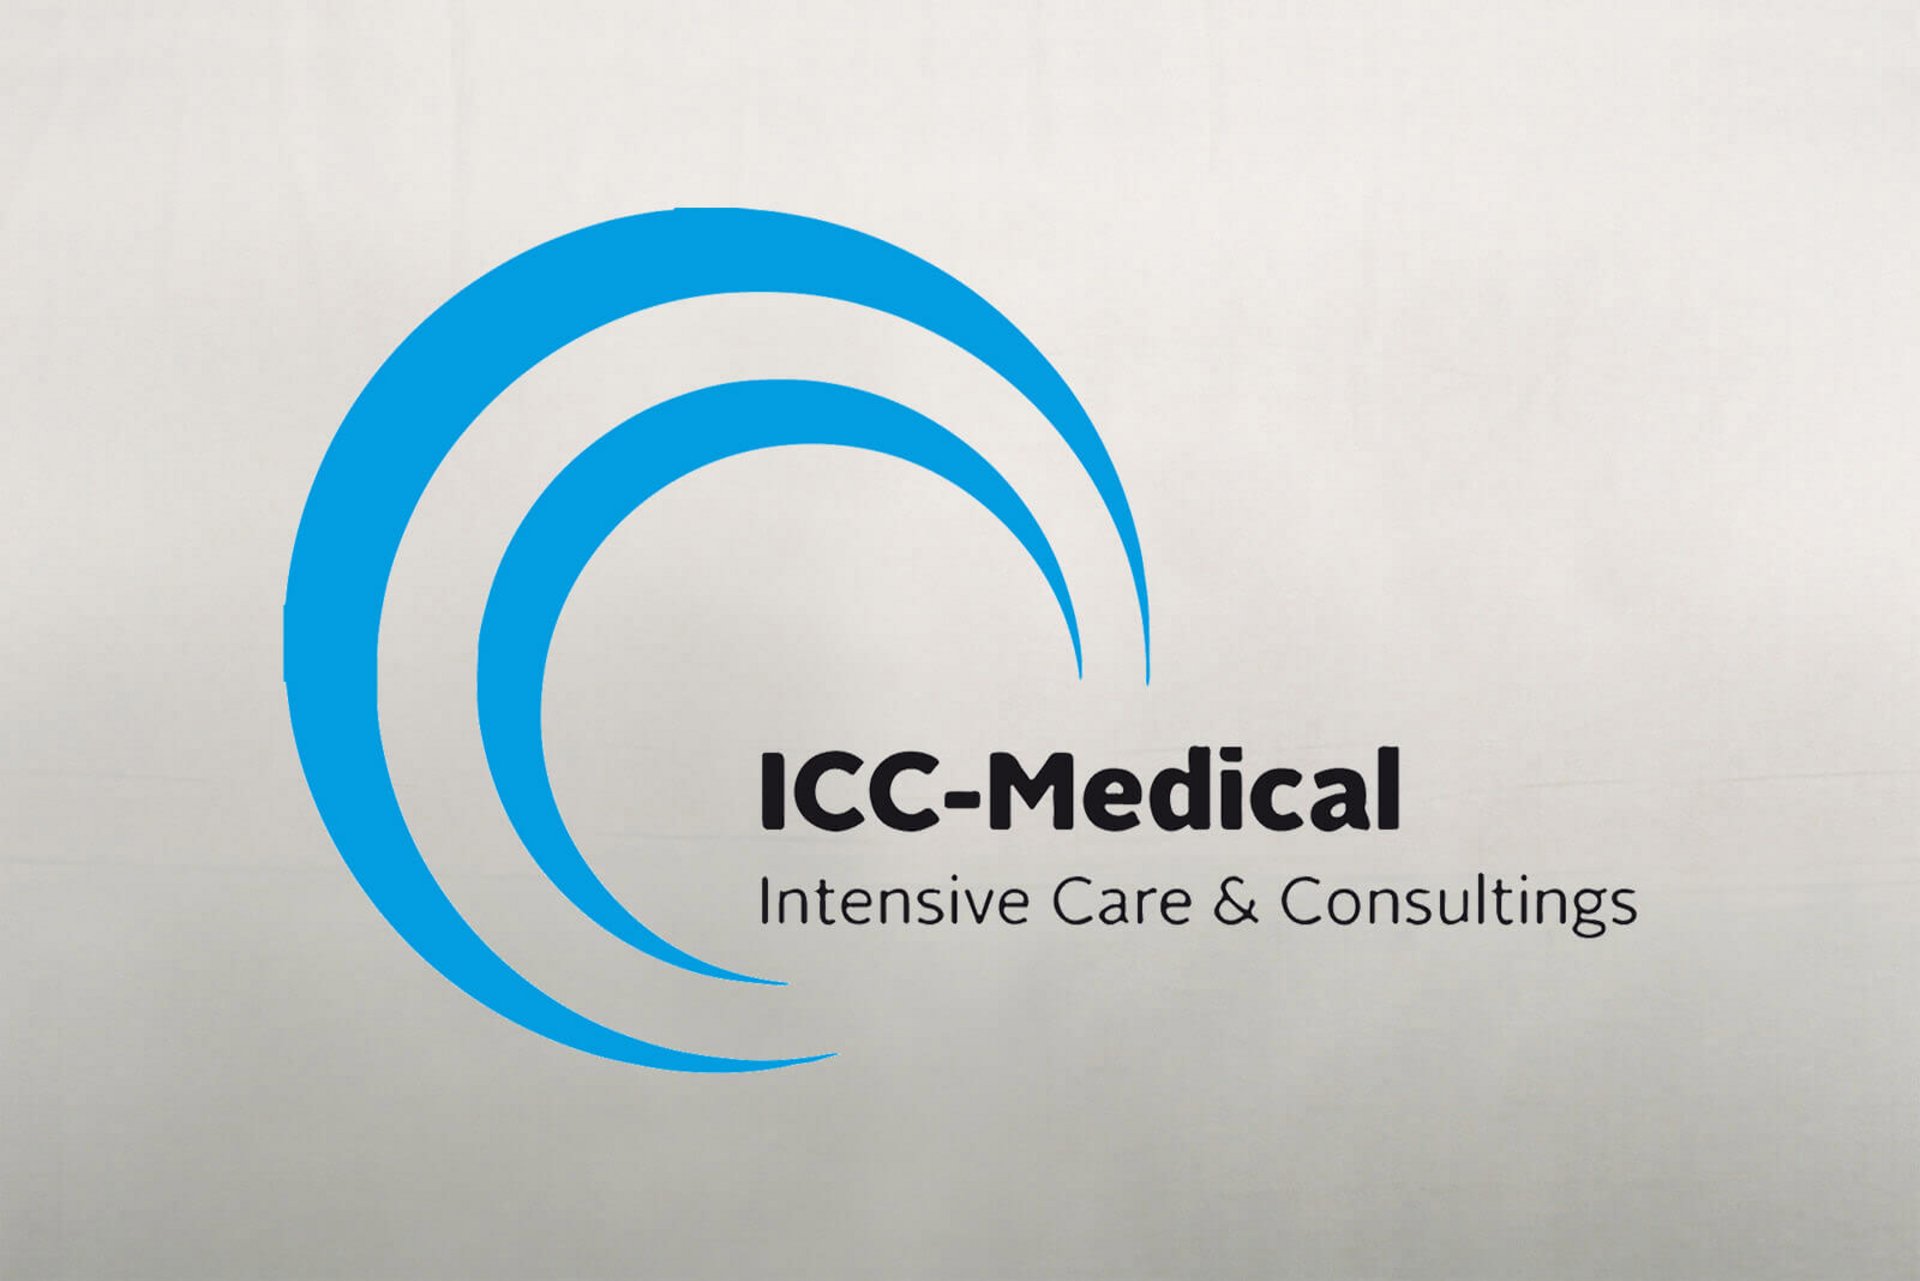 ICC-Medical kümmert sich um Fachpersonalvermittlung im Gesundheitswesen